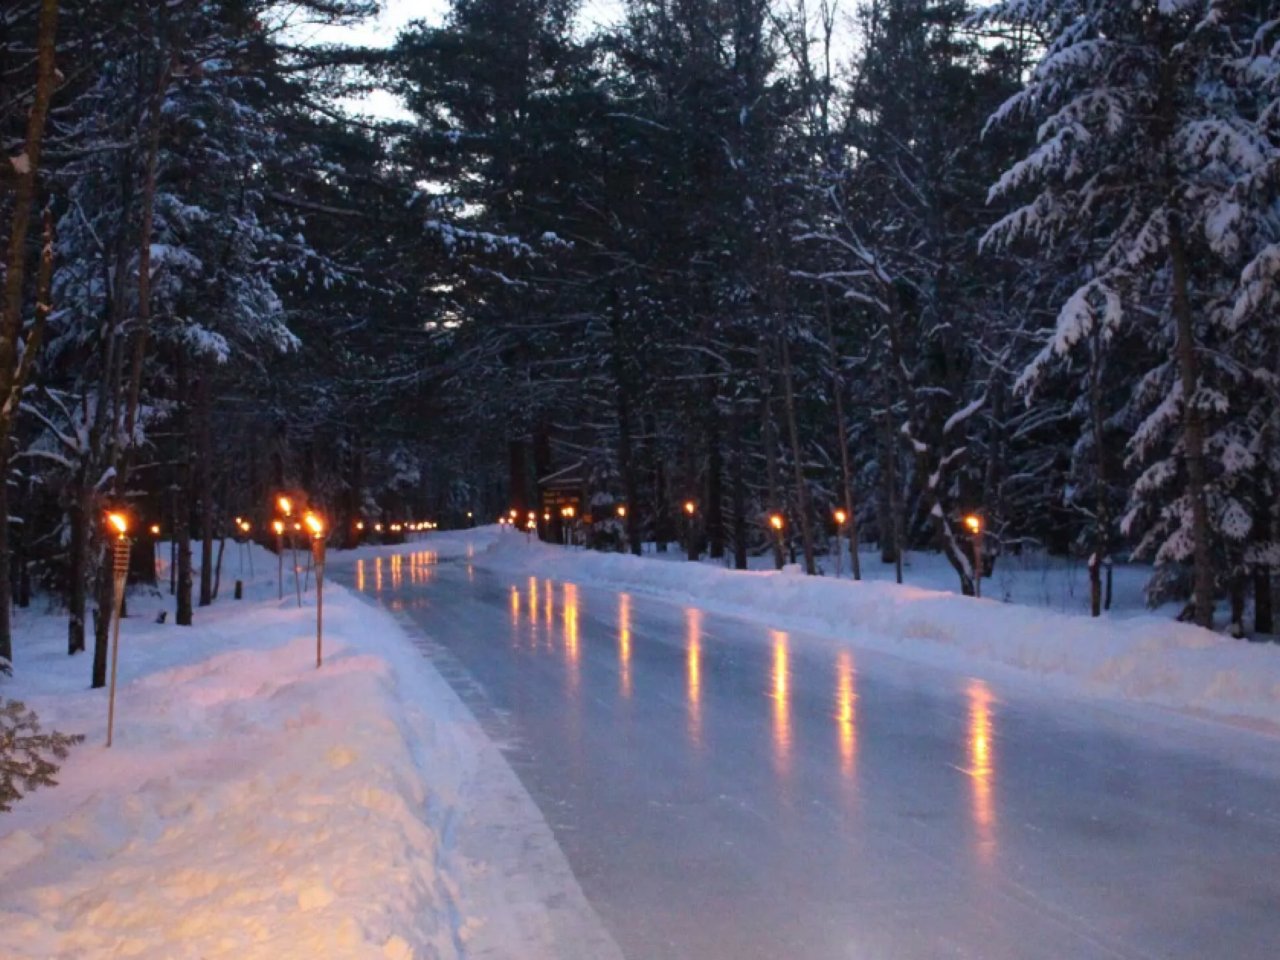 浪漫的夜晚🏙发光冰道可供在森林中滑行...